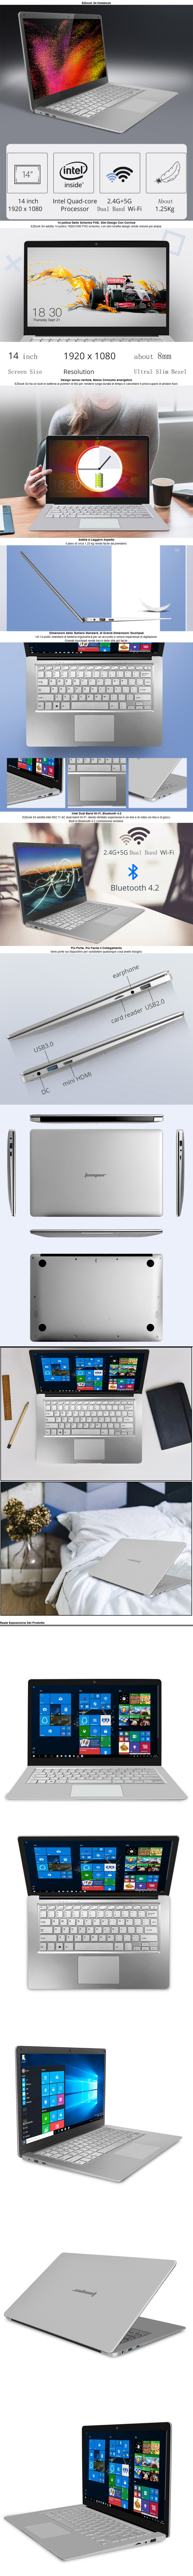 Jumper EZbook S4 Laptop 14.1 inch Gemini Lake N4100 8GB RAM DDR4L 128GB ROM SSD UHD Graphics 600